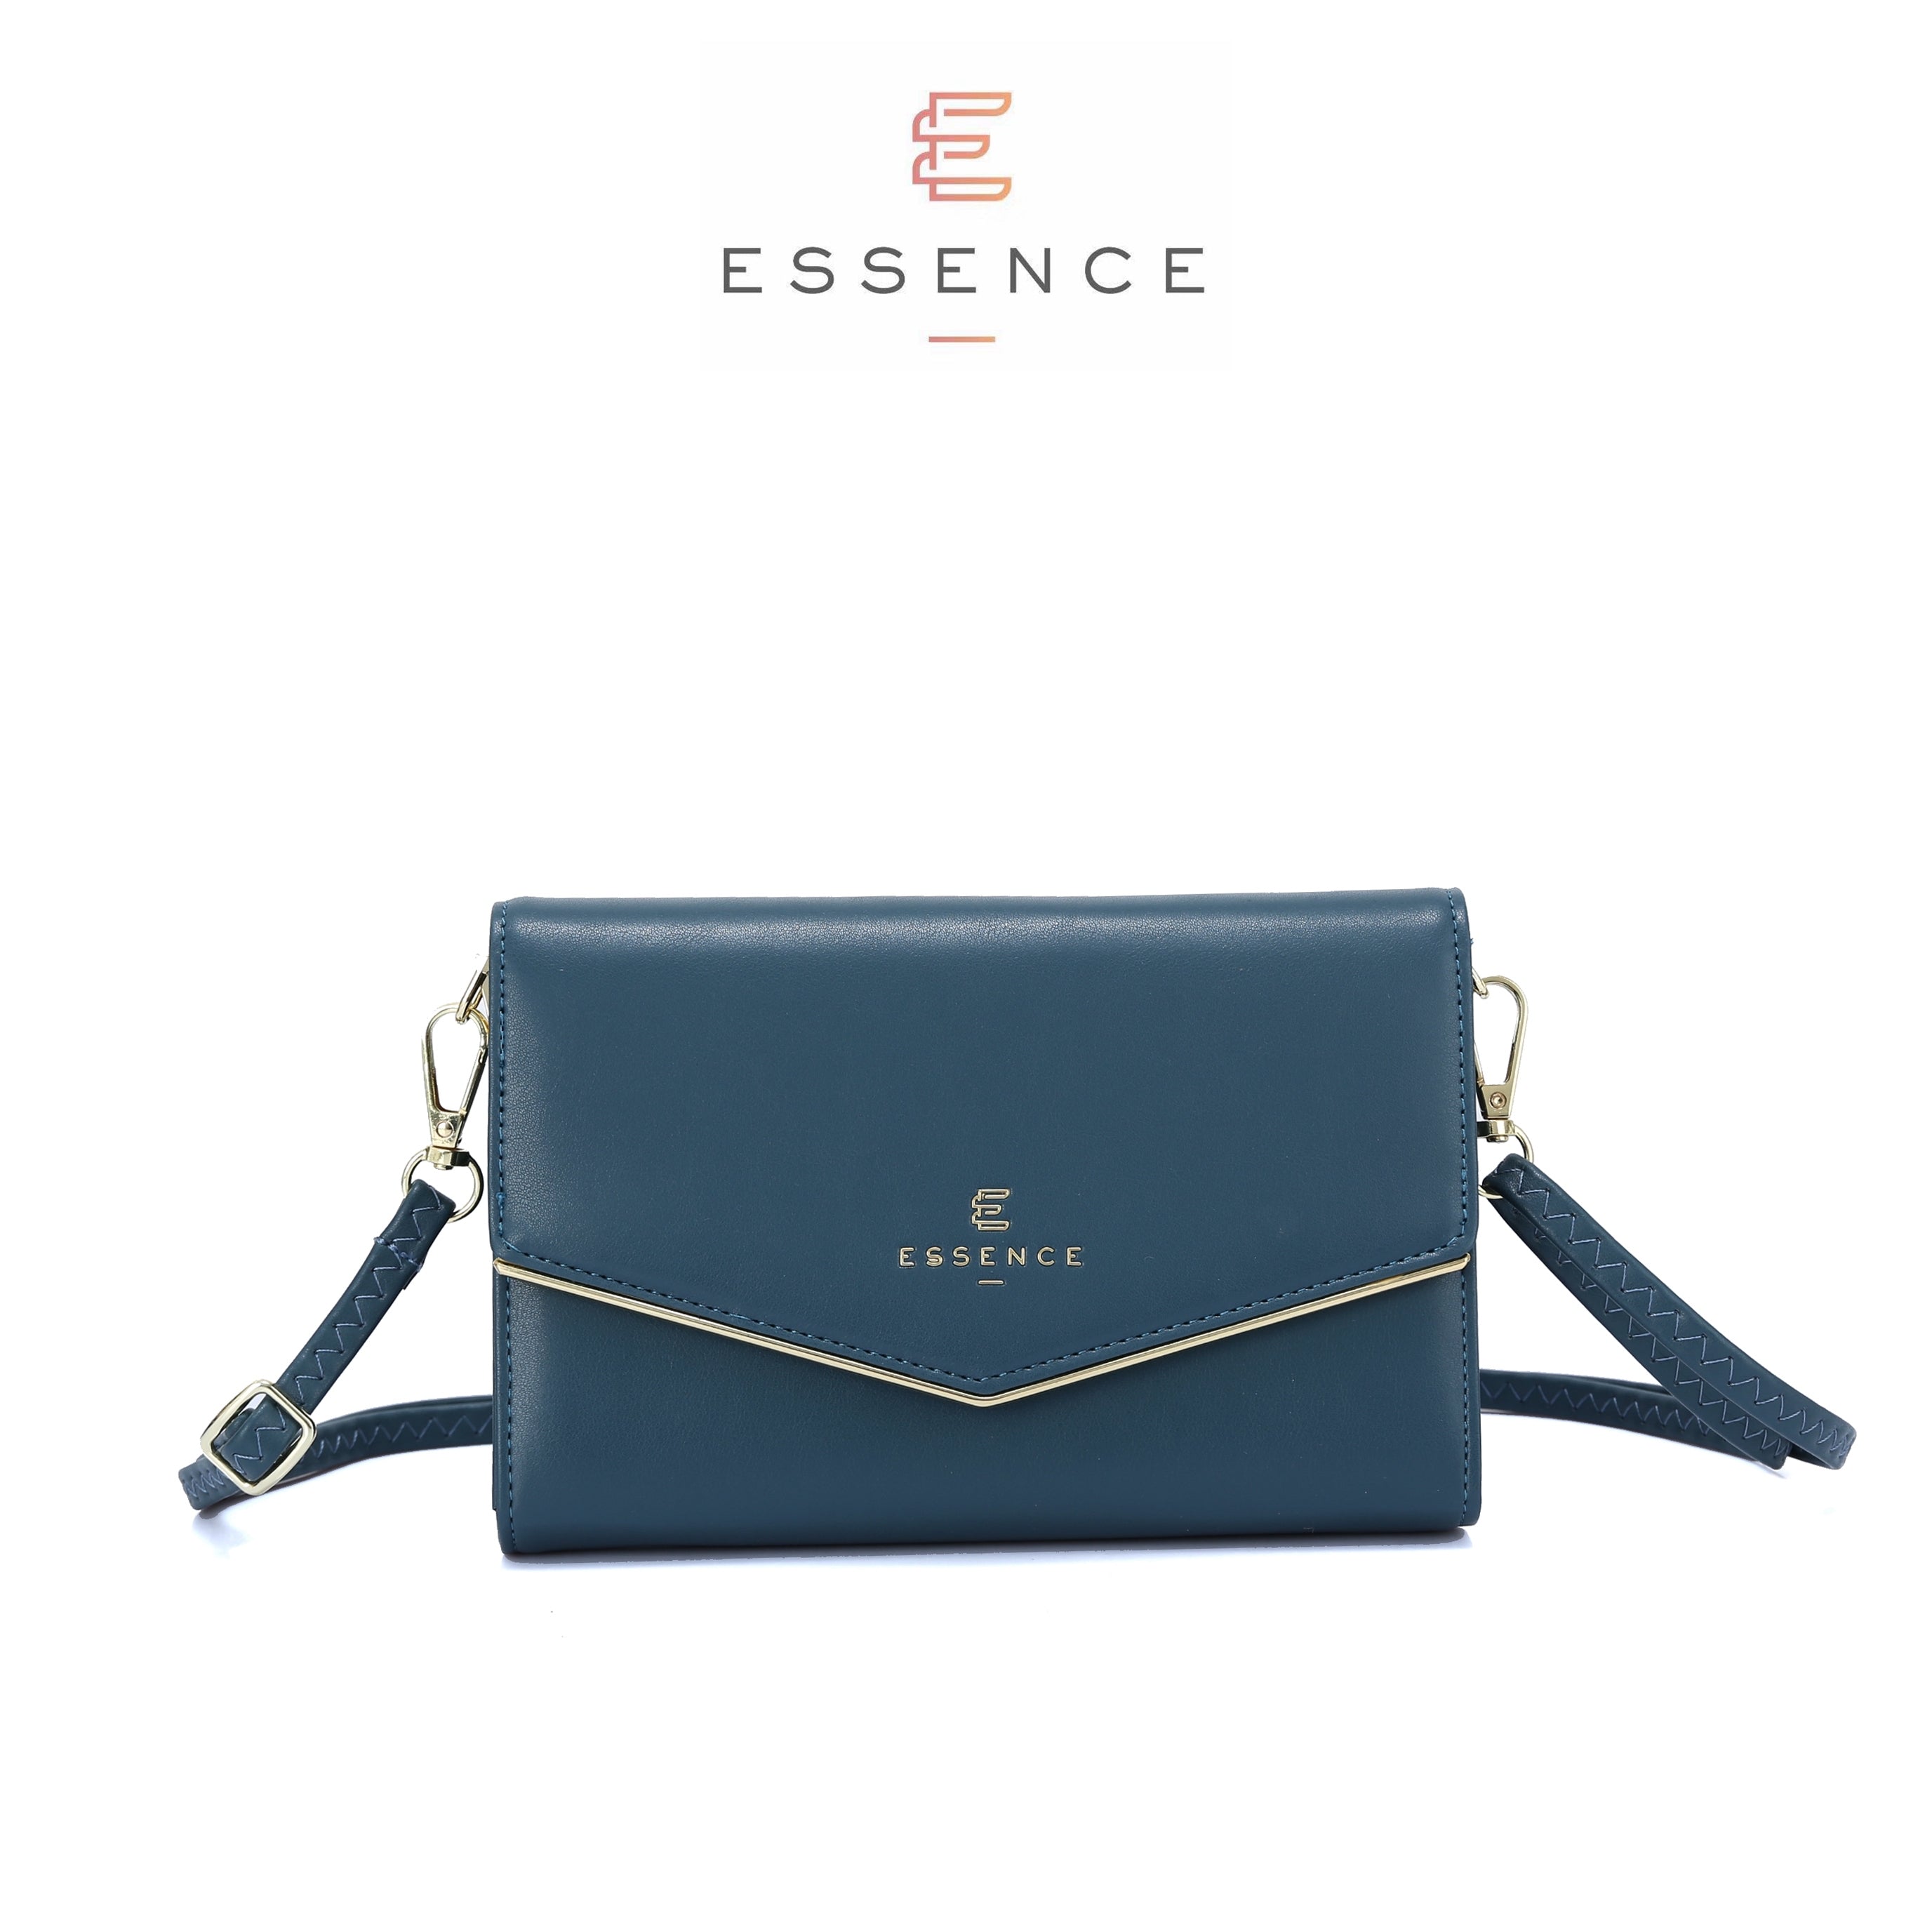 Essence Cross Handbags Tops - Buy Essence Cross Handbags Tops online in  India